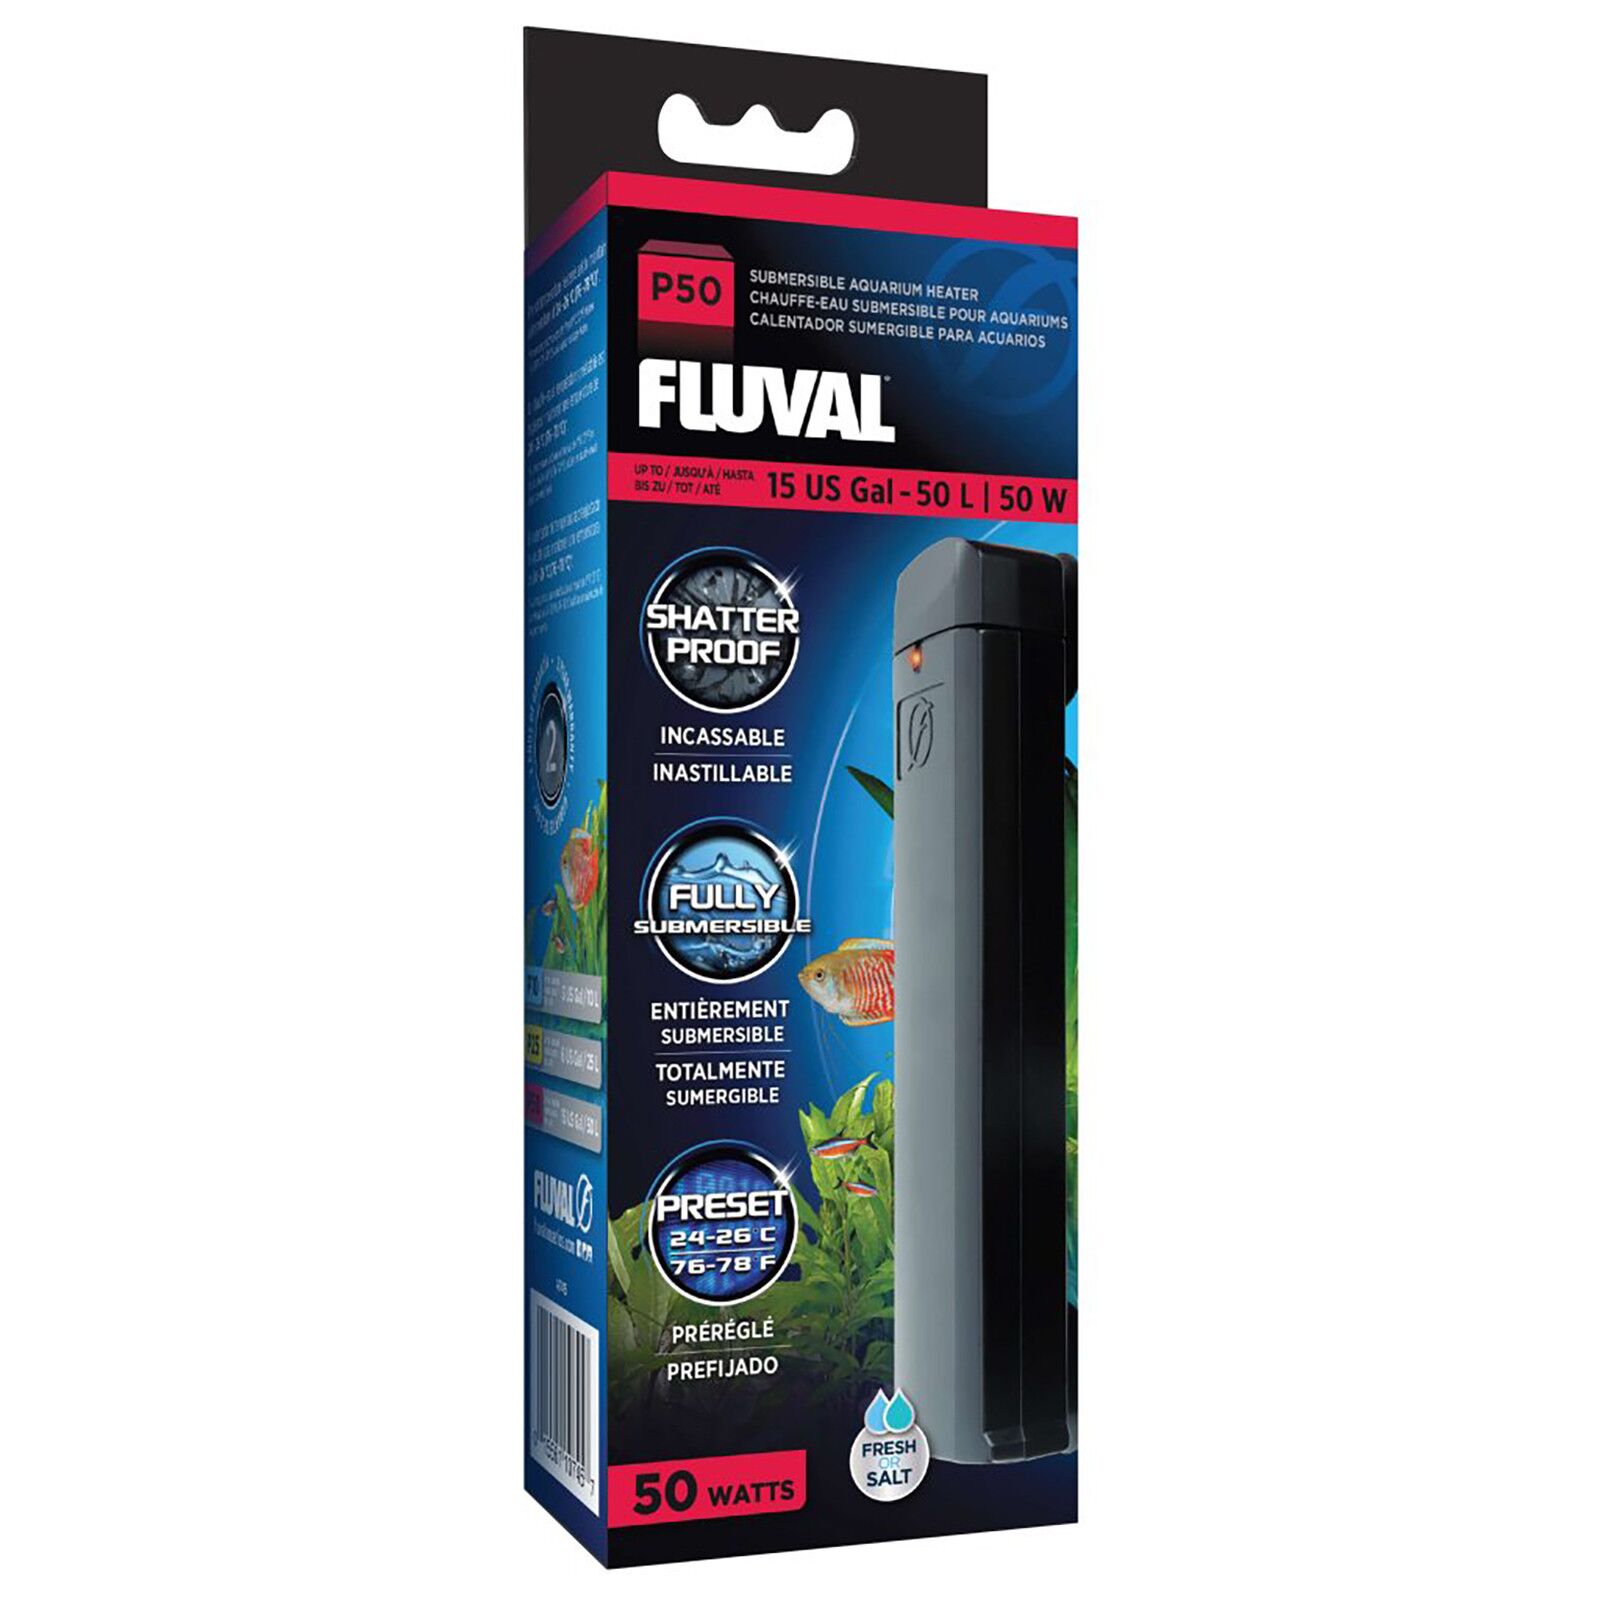 Fluval - P-Series Aquarium Heater